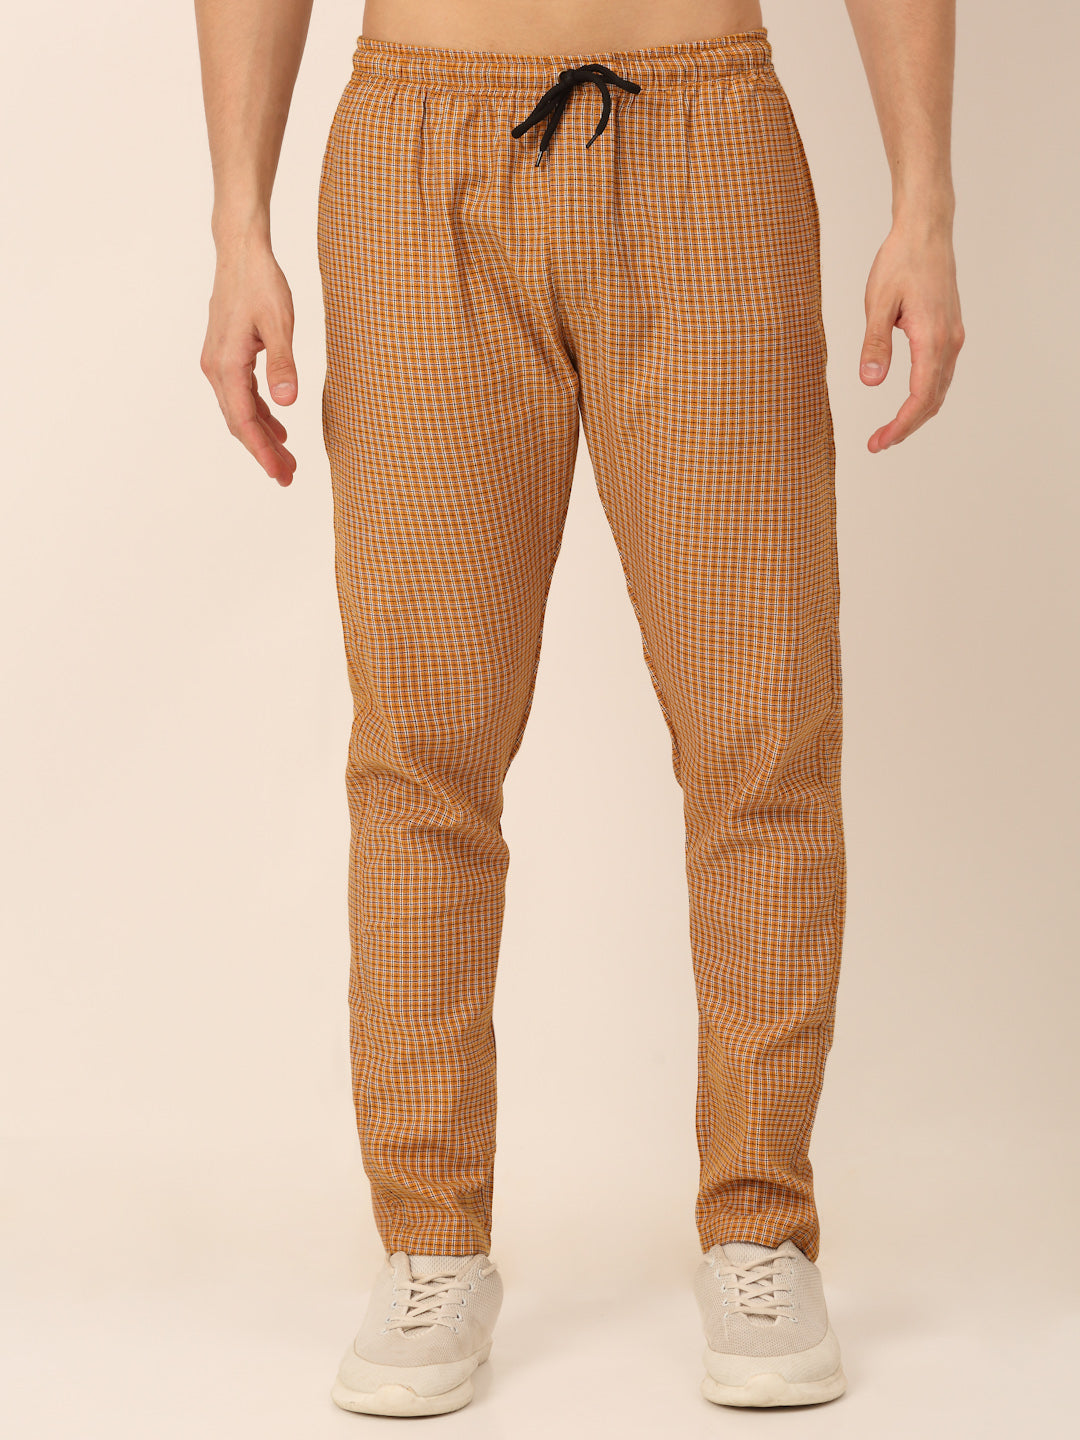 Jainish Men's Checked Cotton Track Pants - Mustard - Distacart